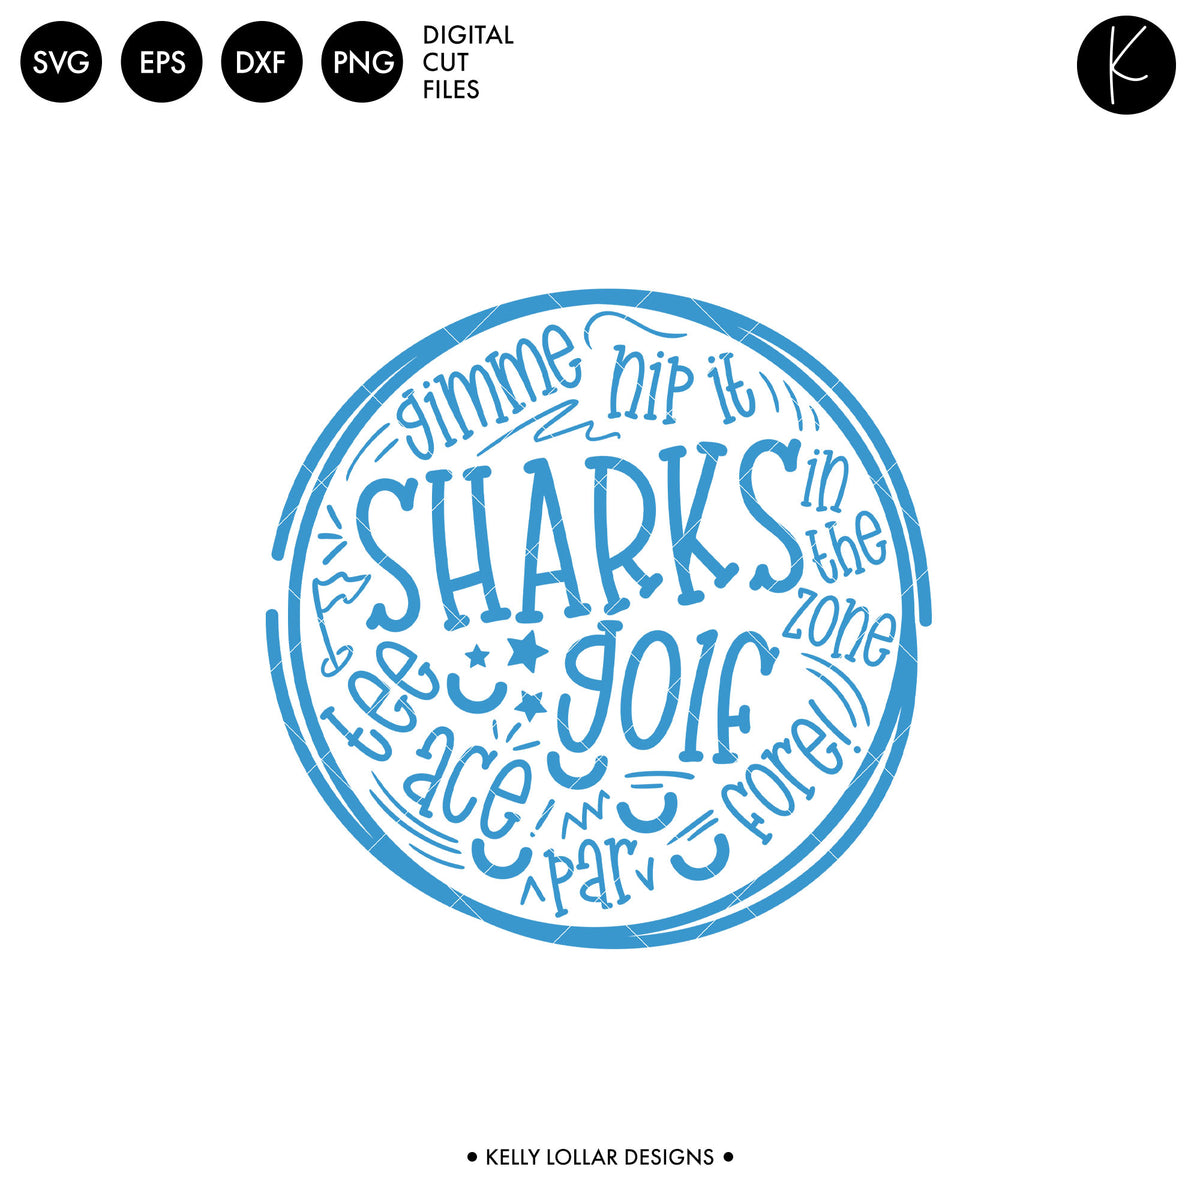 Sharks Golf Bundle | SVG DXF EPS PNG Cut Files